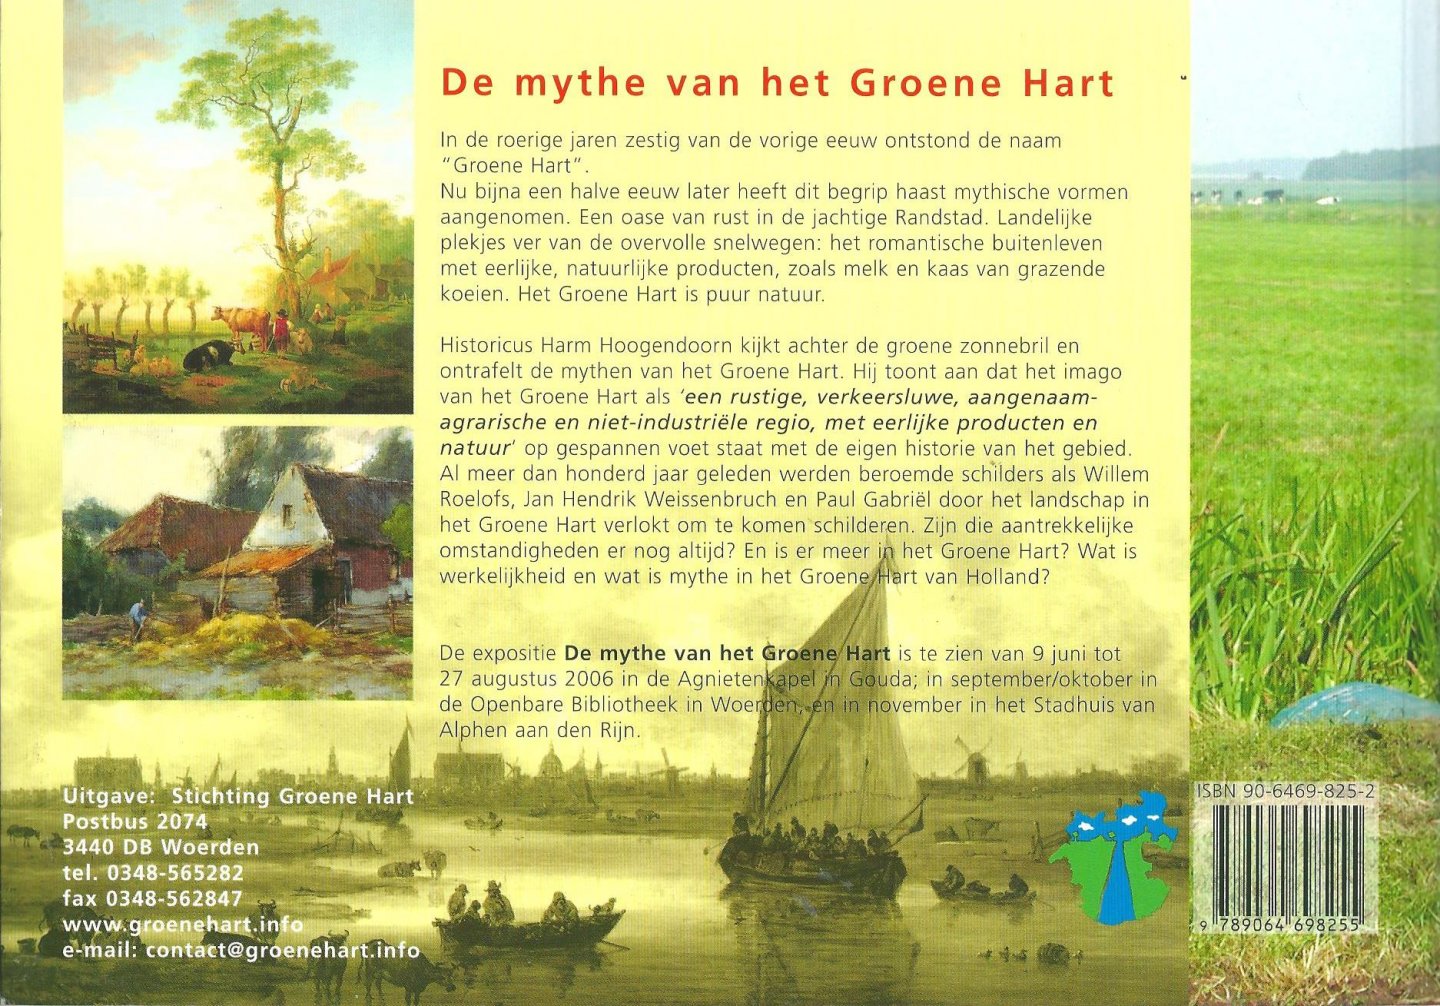 Hoogendoorn, Harm - De mythe van het Groene Hart